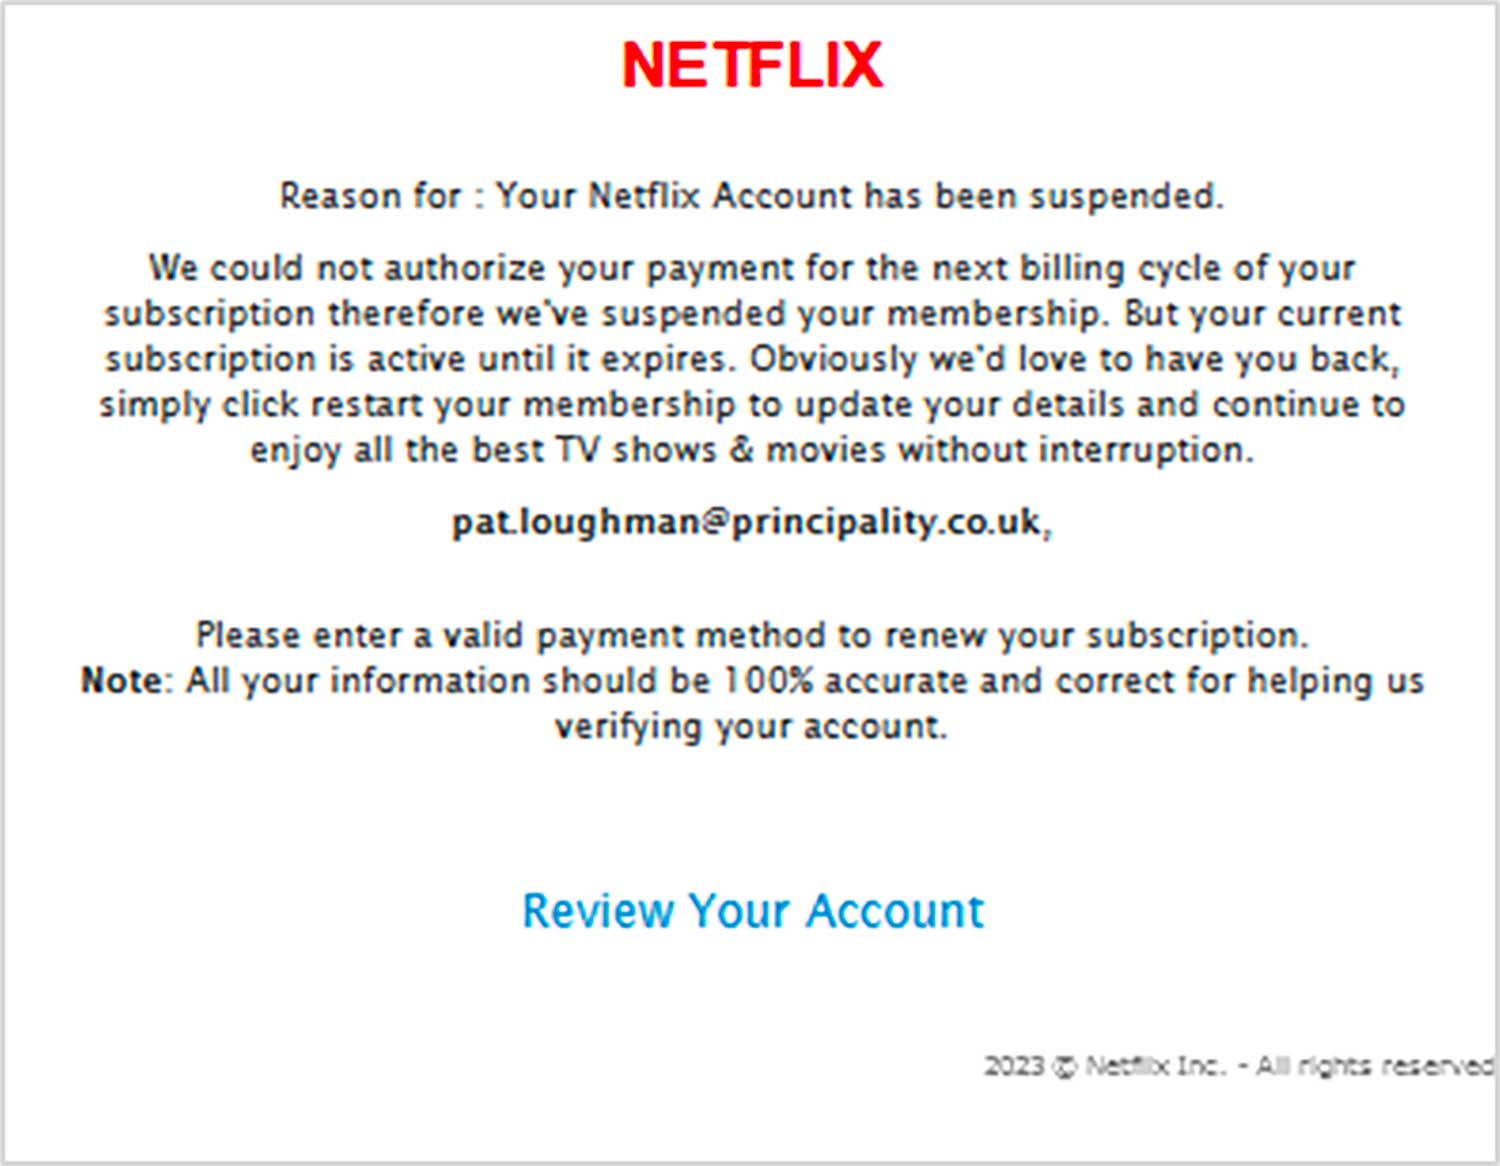 La truffa Netflix per rubare i dati di pagamento